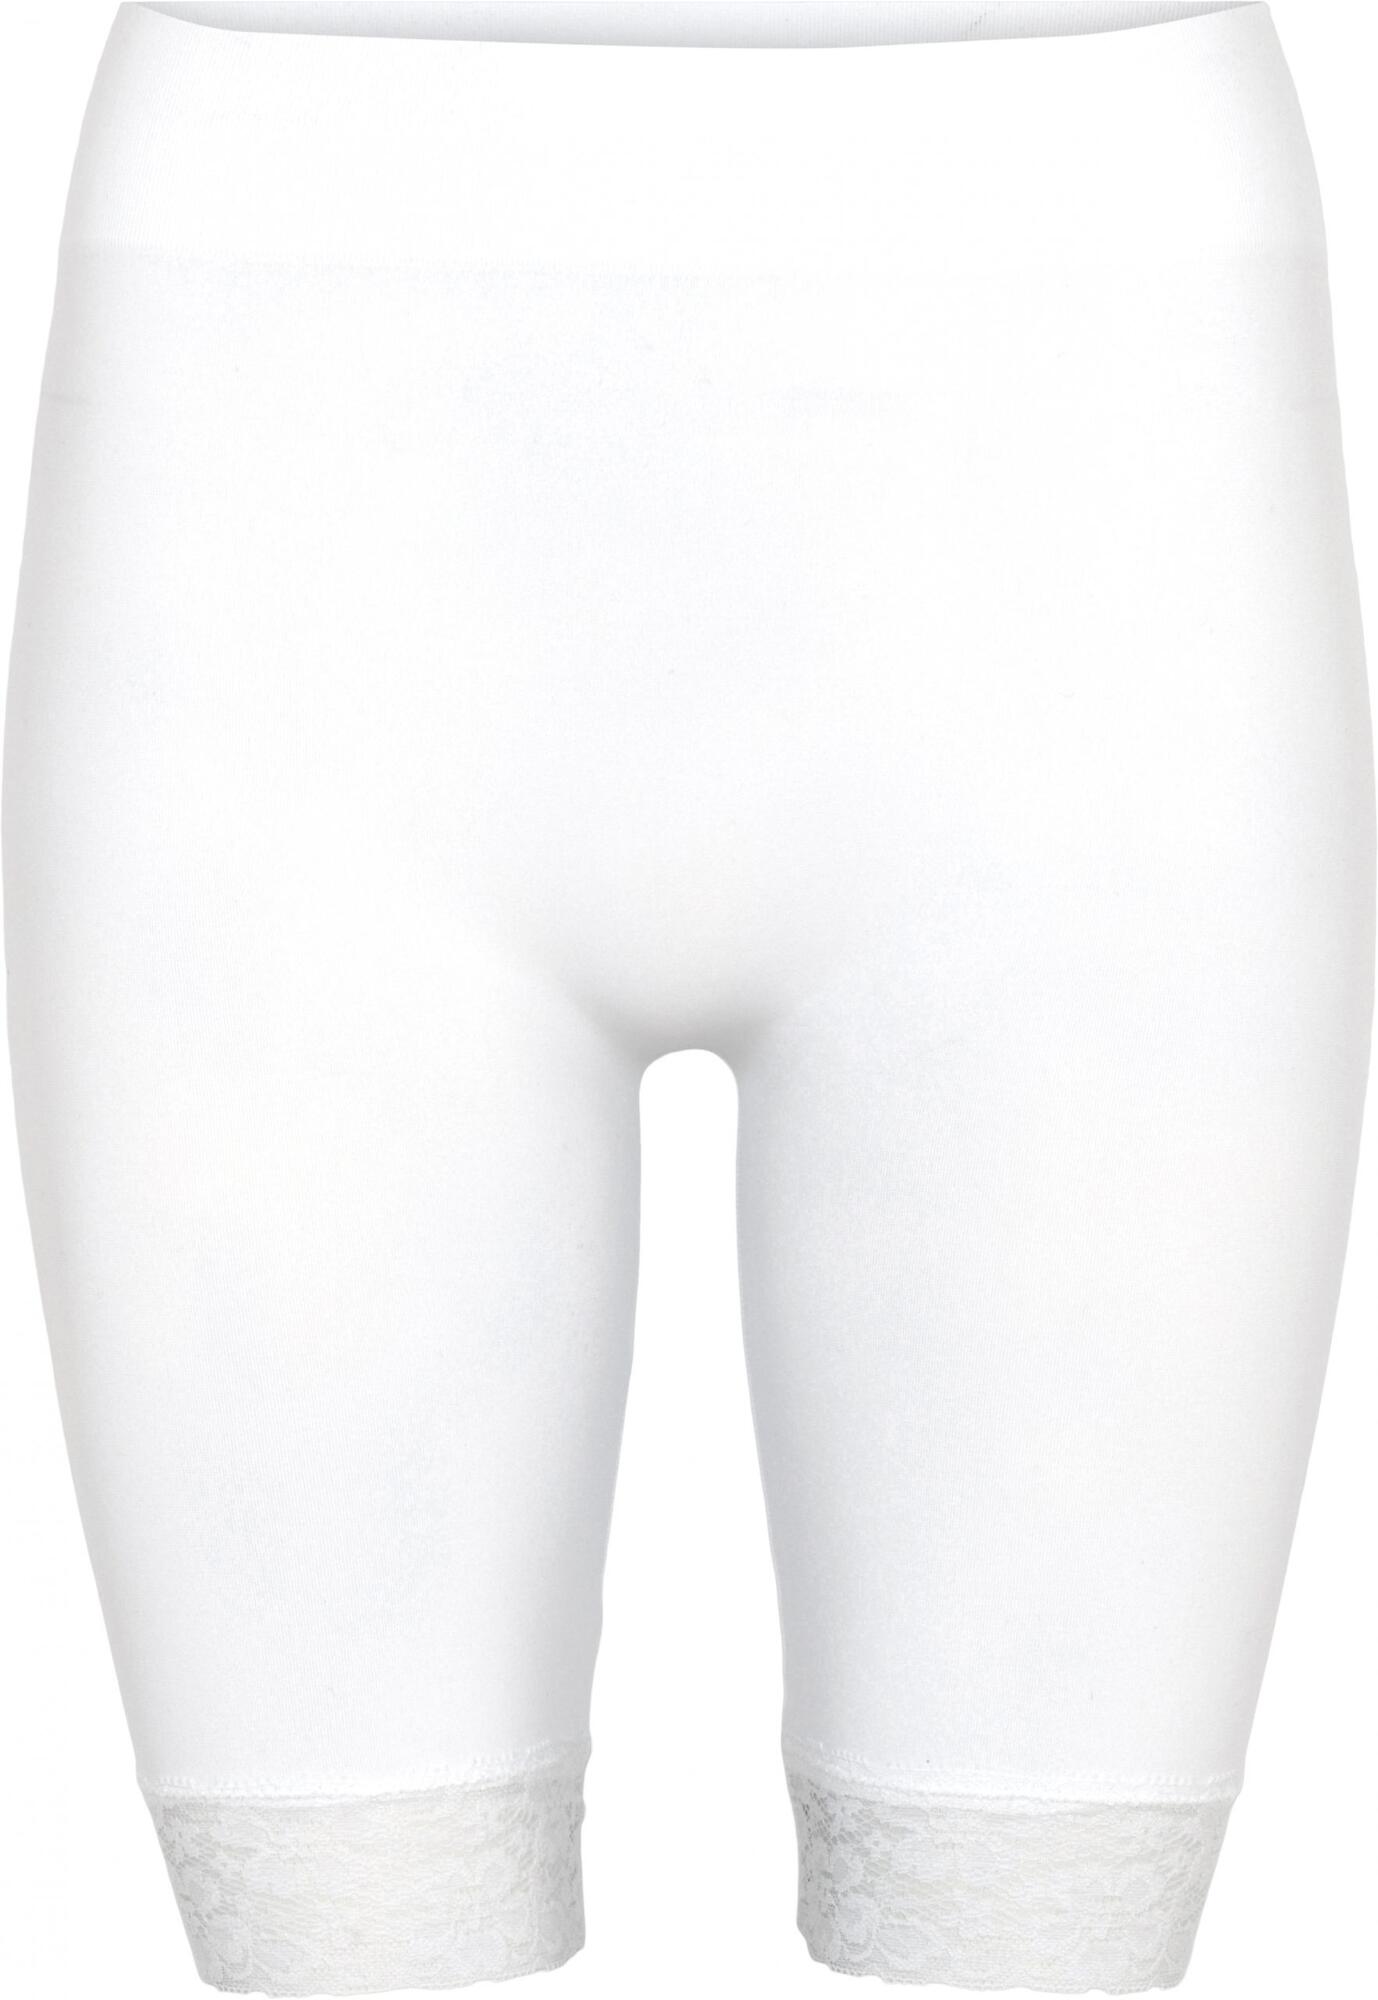 DECOY White Long Shorts w/lace